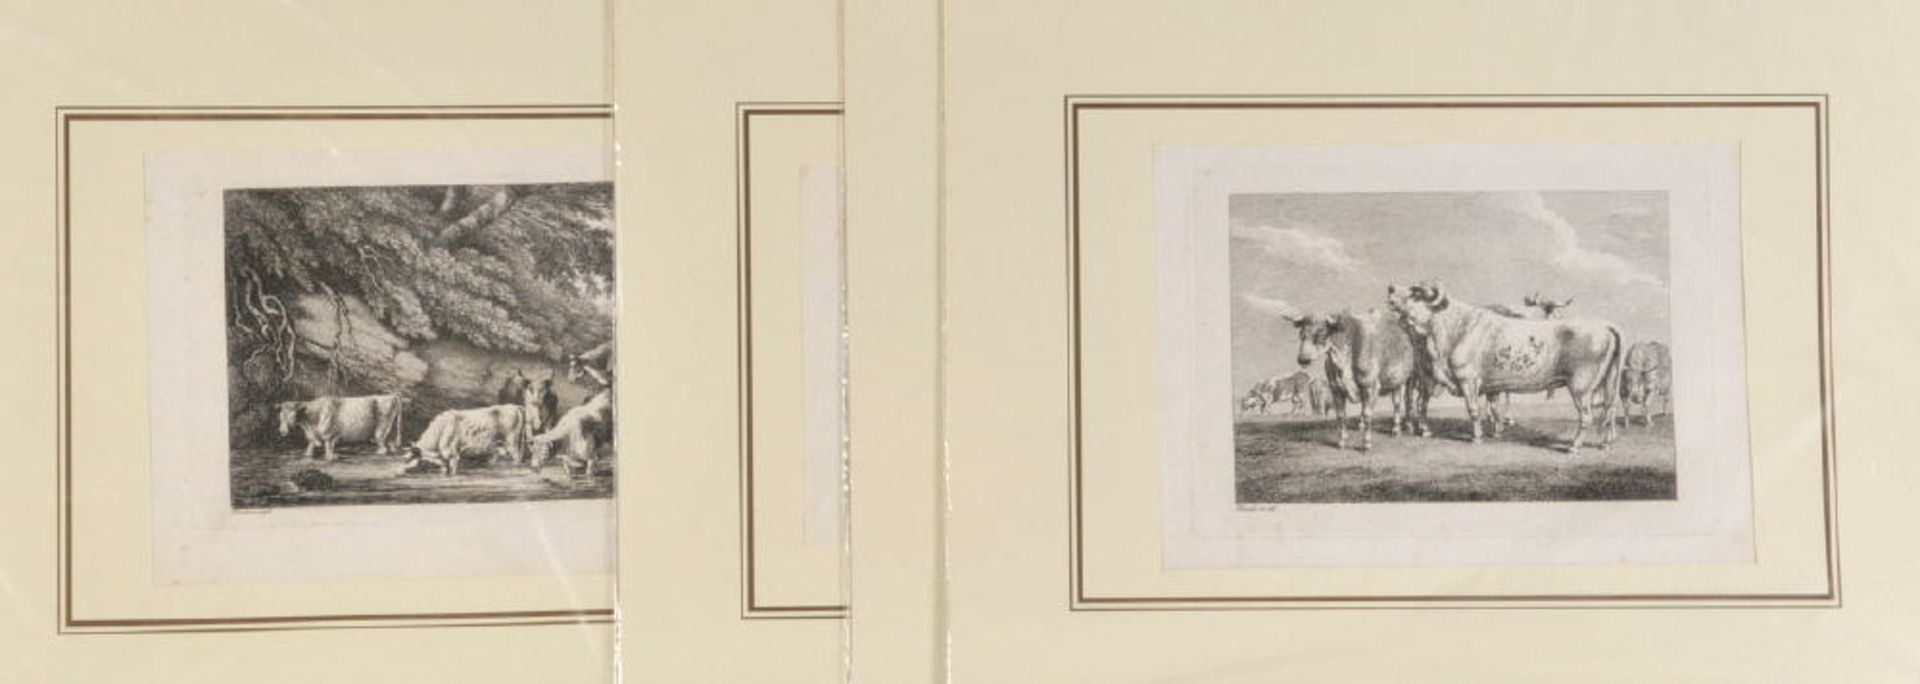 Howitt, William Samuel, ca. 1765 - 18224 Kupferstiche, je ca. 13 x 18 cm, " Rinderdarstellungen ",